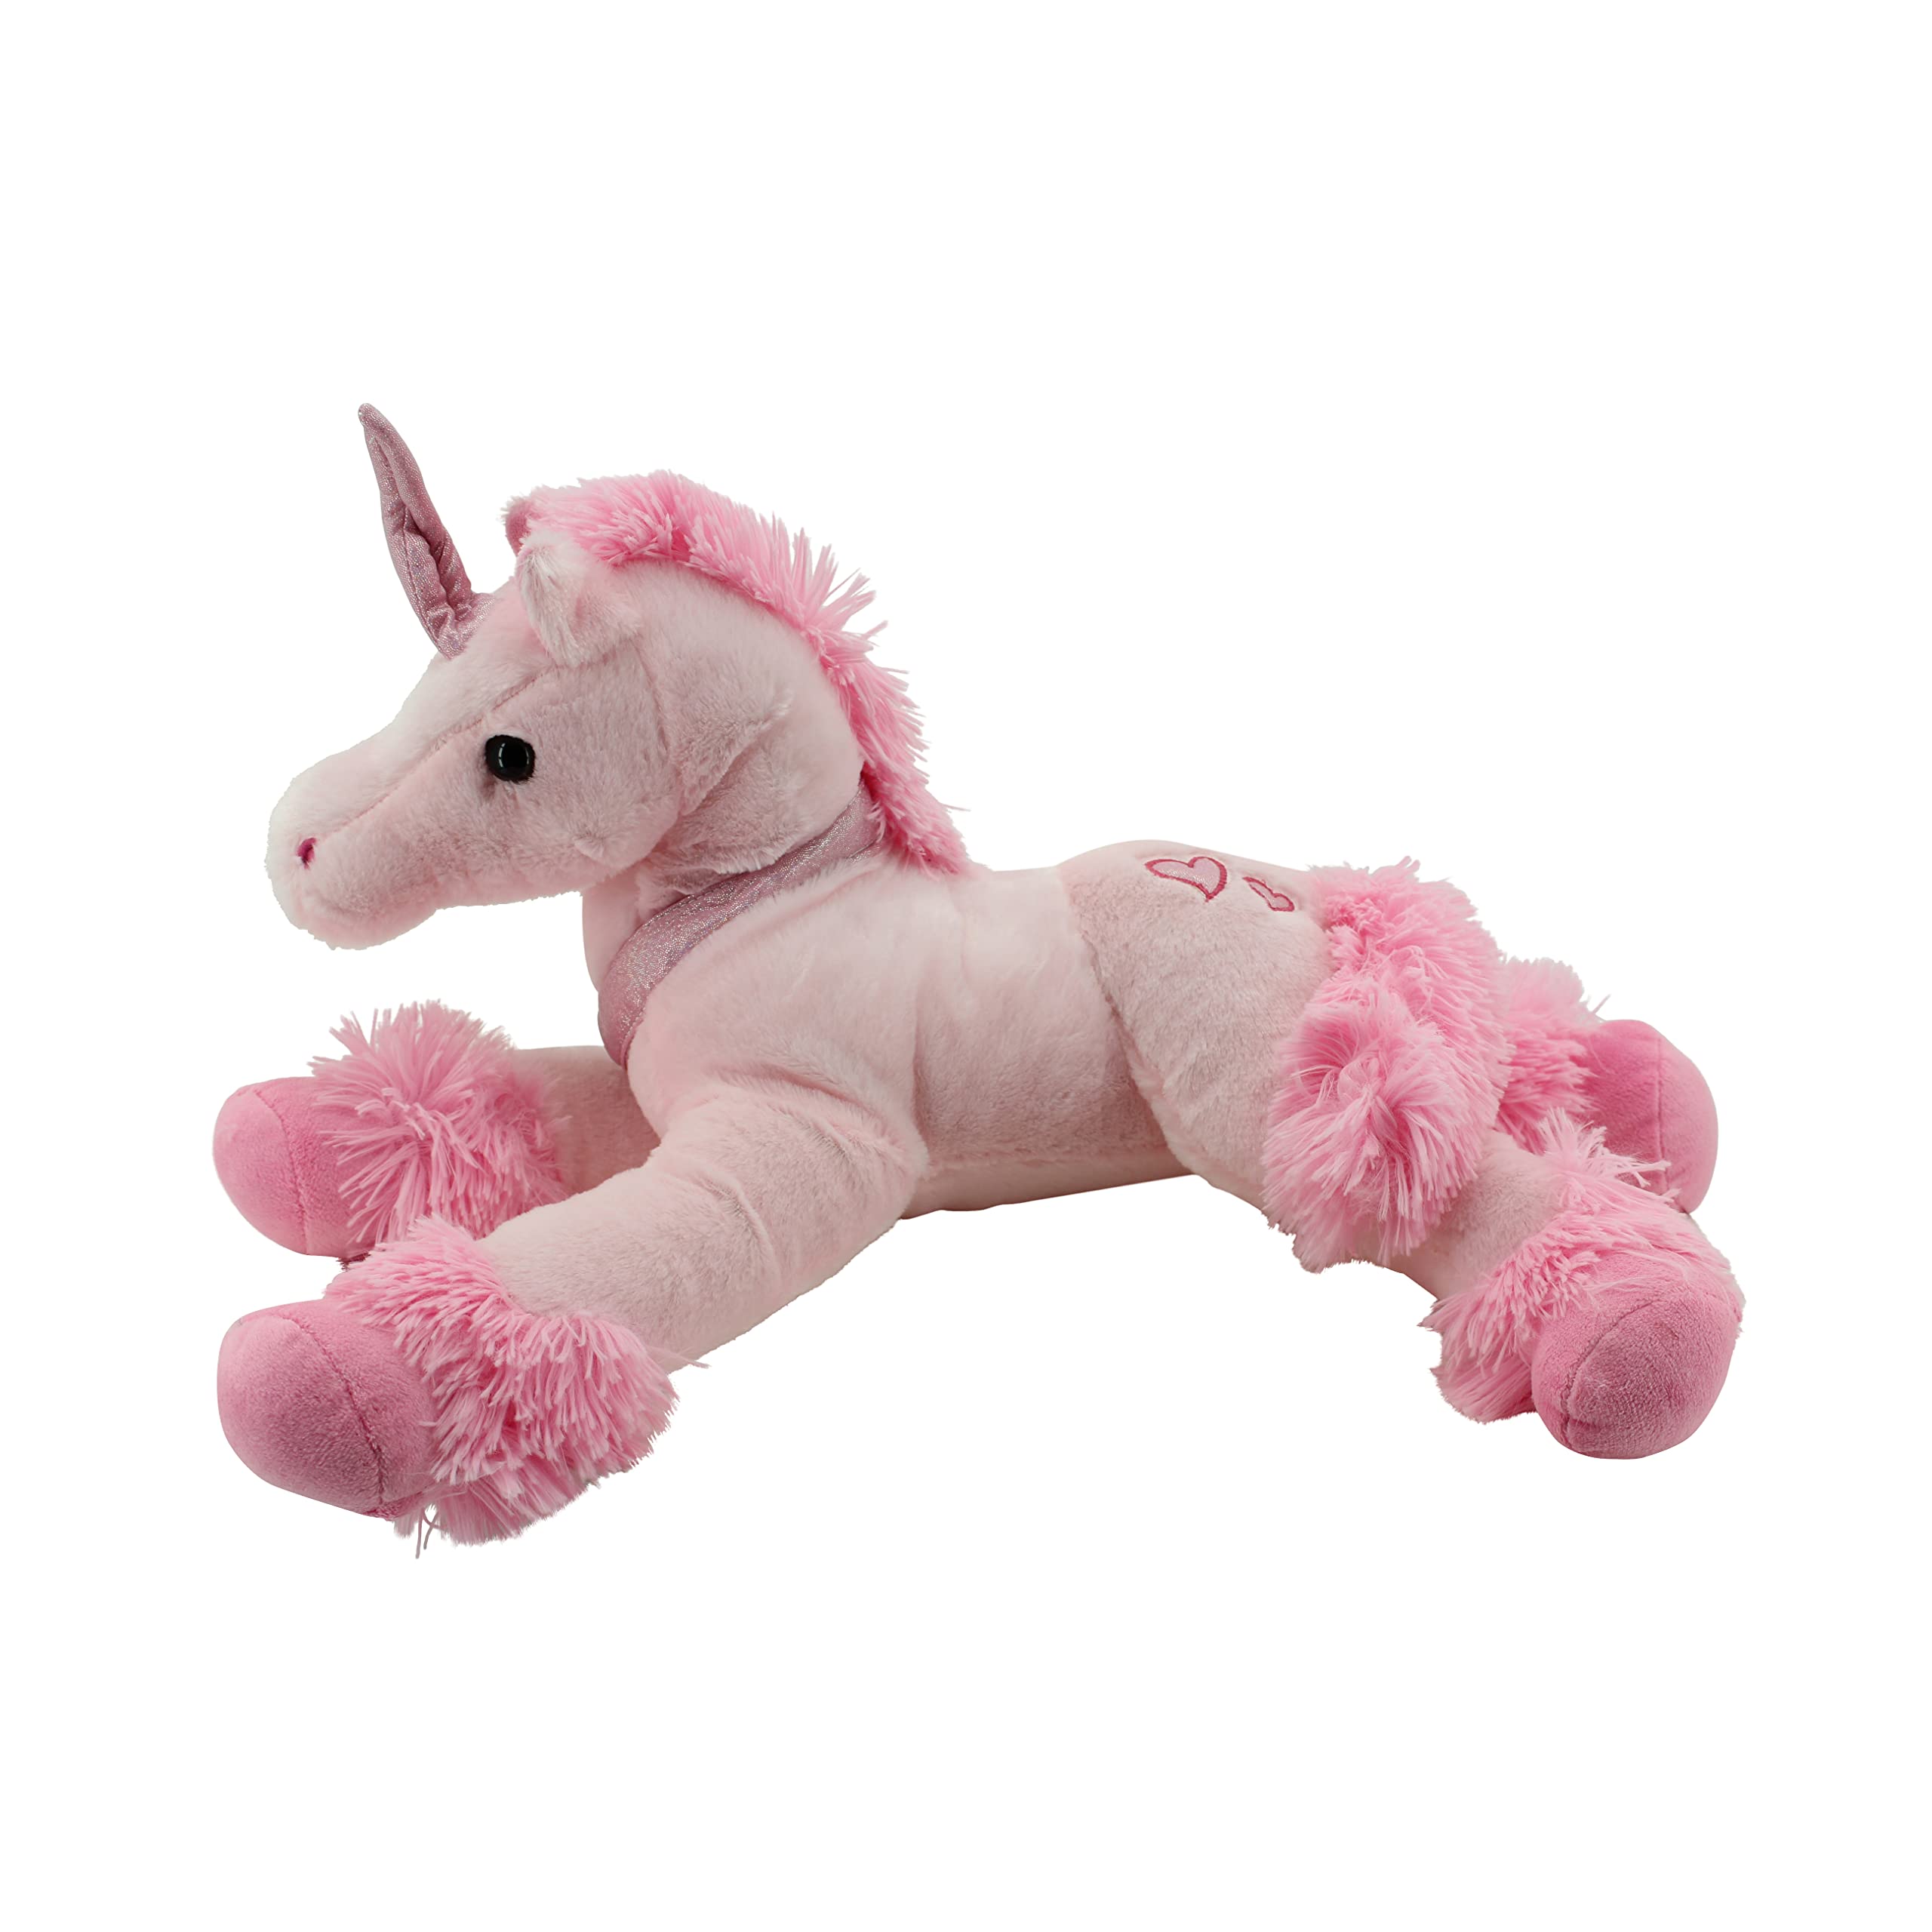 Sweety Toys Plüsch 3952 Einhorn 62 cm pink Plüschtier Unicorn Pegasus